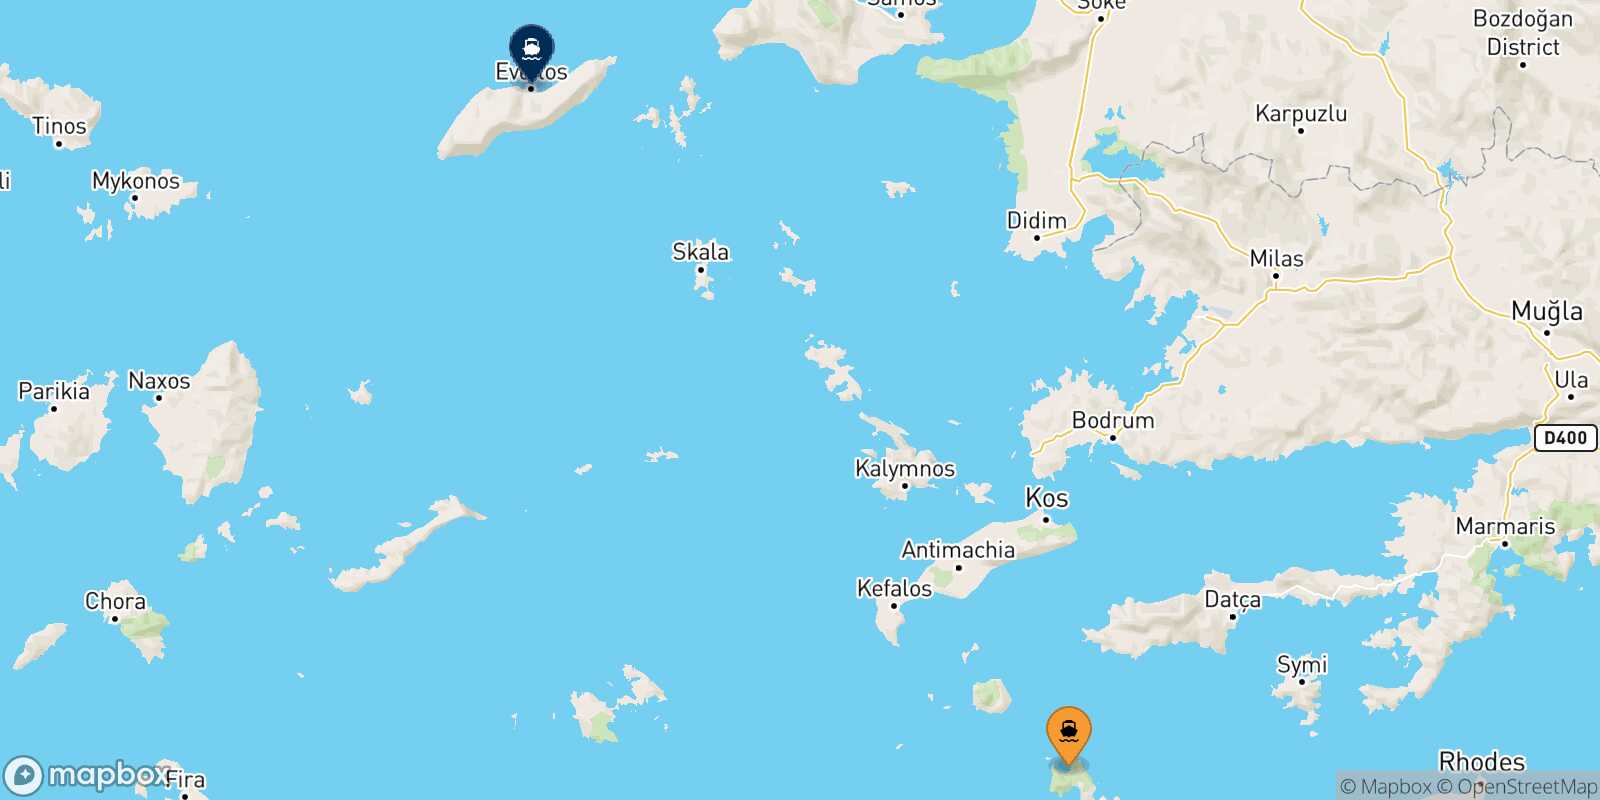 Tilos Agios Kirikos (Ikaria) route map